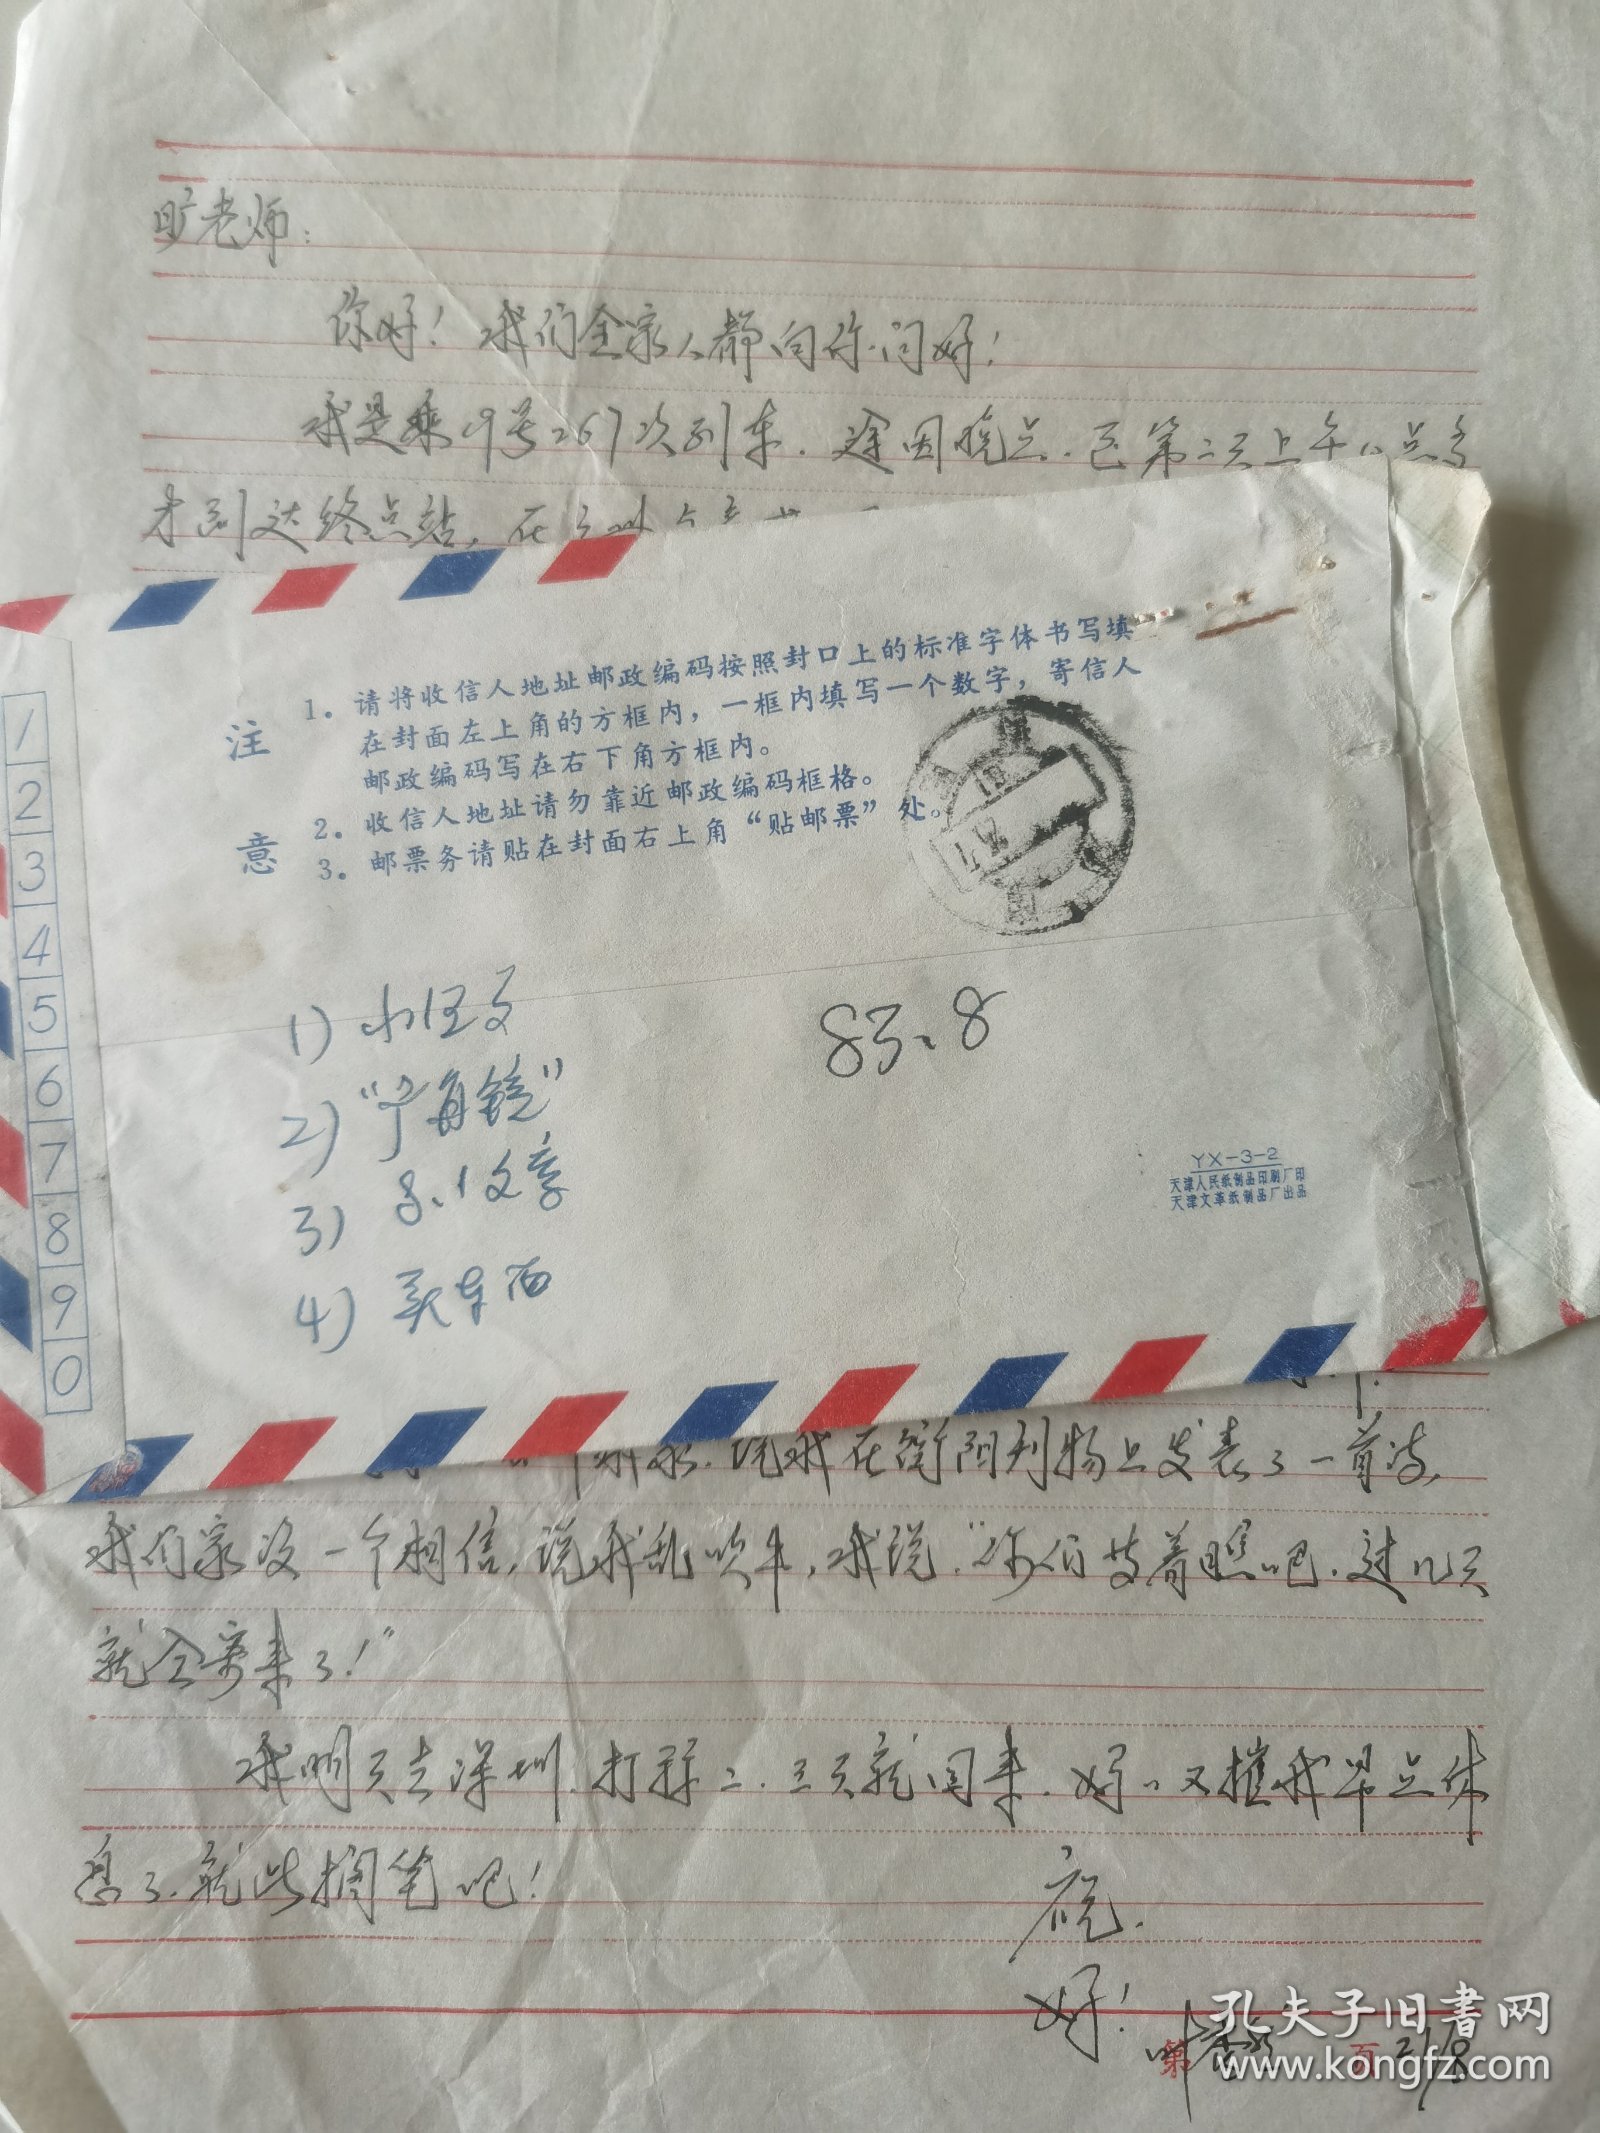 著名作家诗人、小叶秀子（叶秀然）亲笔签名信札1件，1983年在空军医院当护师时写给原衡阳市文联副主席旷荣怿的信札，提及“父母组织了有关人员为我举行了一次家庭音乐会，我只好朗诵一首拜伦诗”。